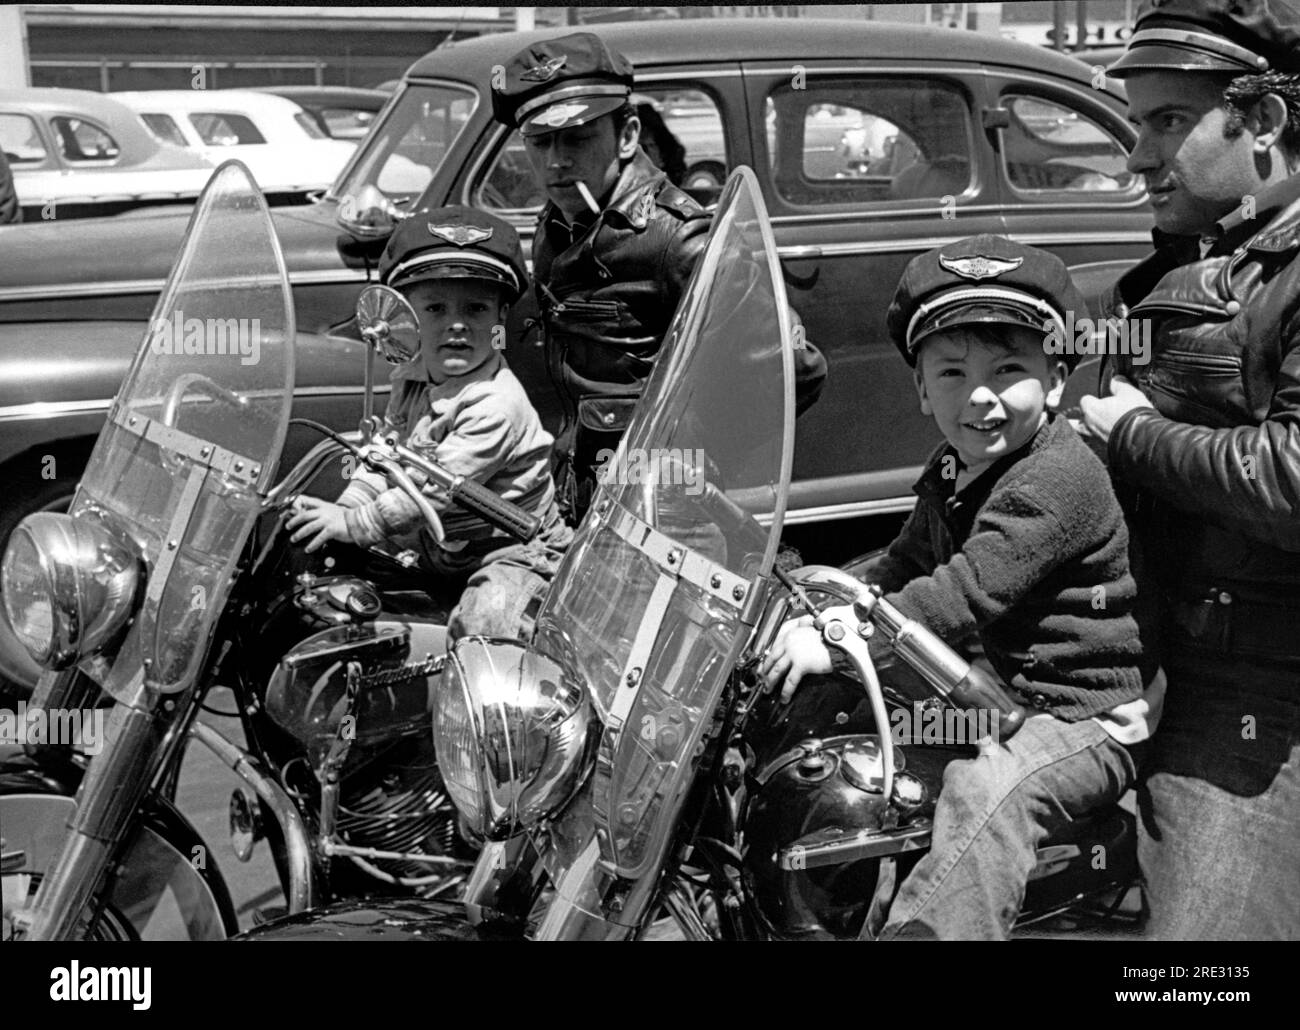 San Francisco, Californie vers 1954 deux motards portant des casquettes et des vestes en cuir sur leurs Harley Davidsons avec leurs petits fils devant eux. Les garçons portent des casquettes qui disent "Harley Davidson Motor cycle". Banque D'Images